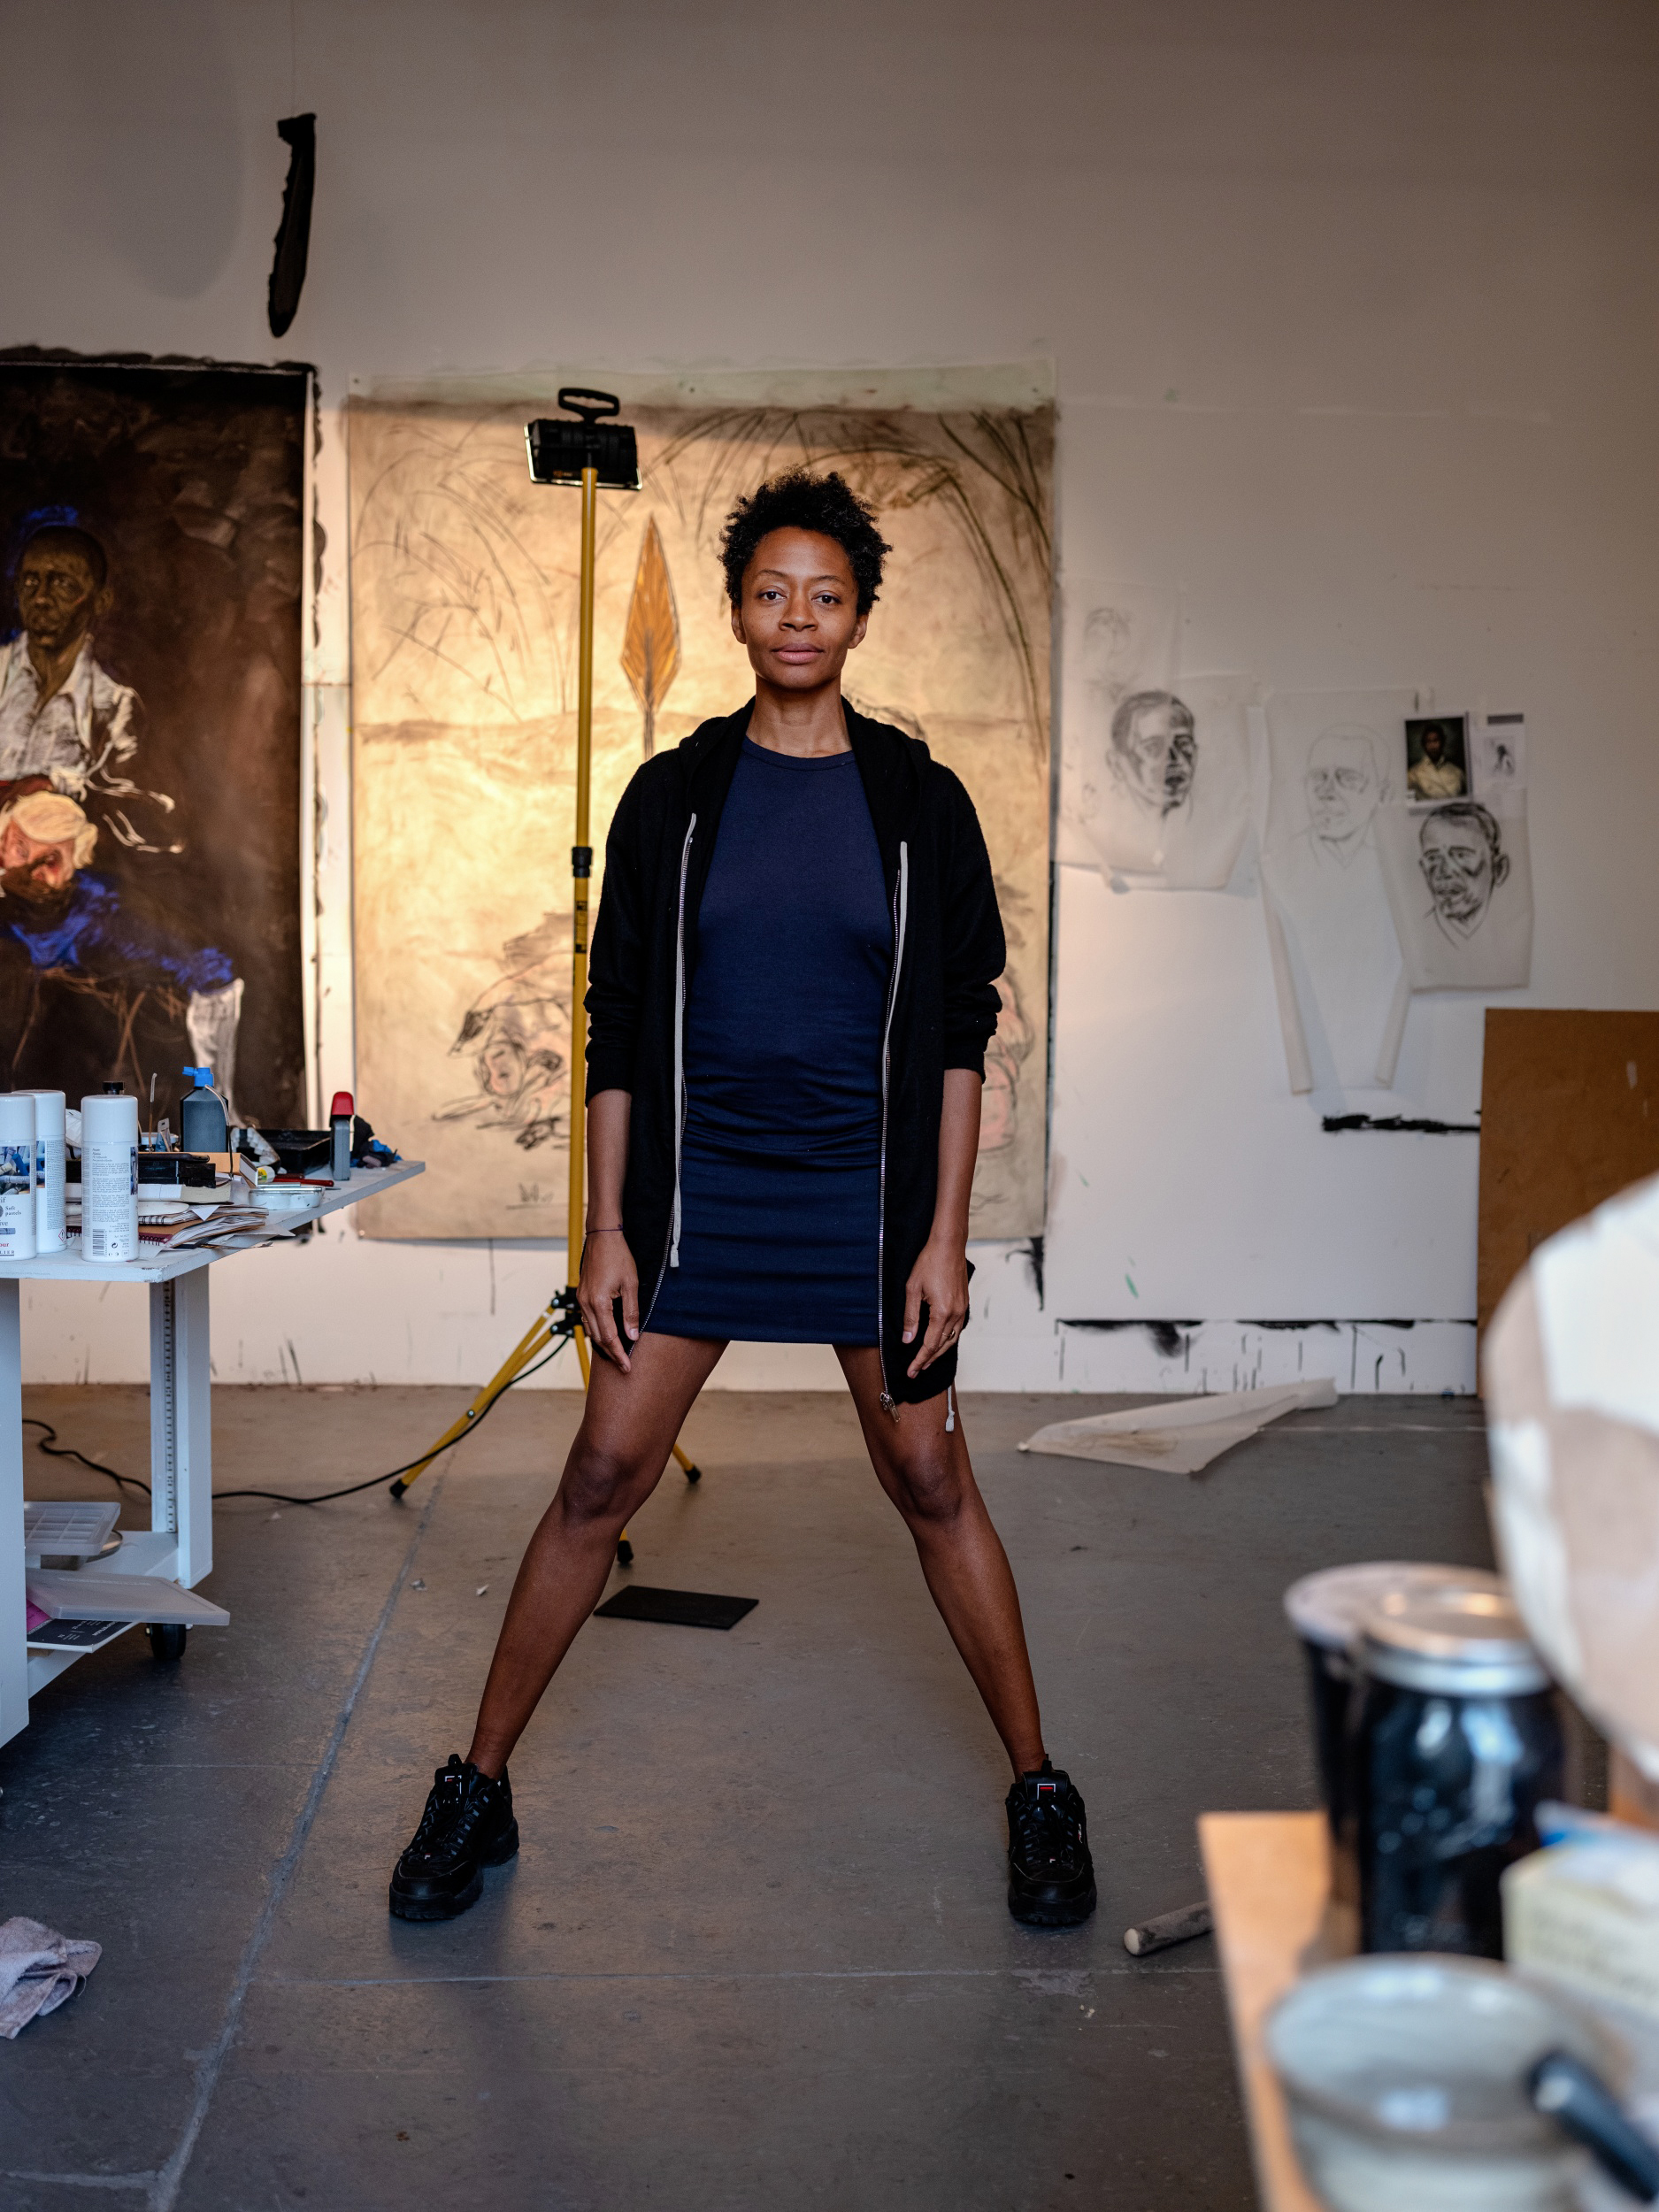 Femme noire dans son atelier d artiste.